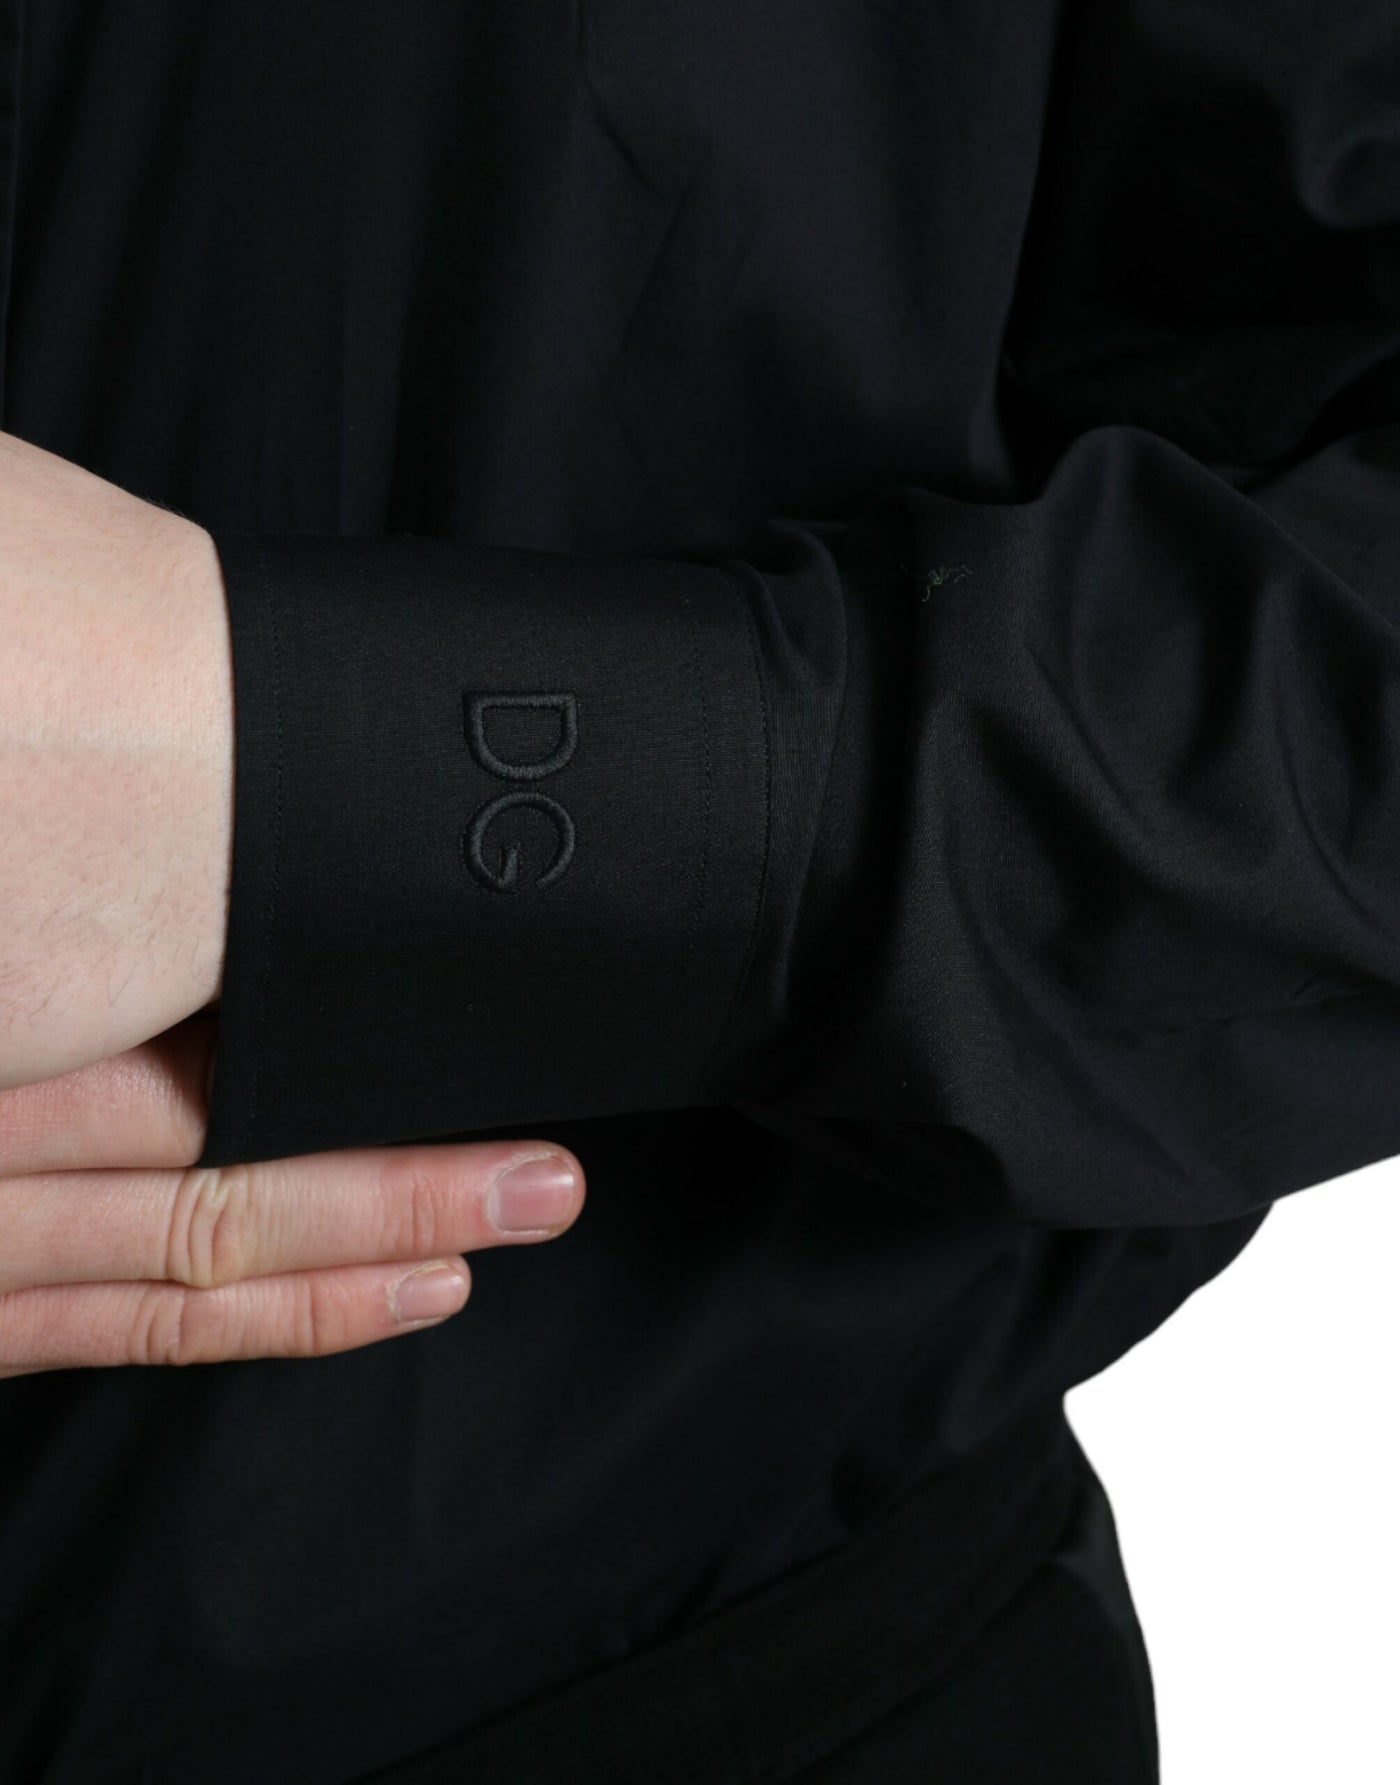 Dolce & Gabbana  Black Cotton Collared Formal Dress Shirt